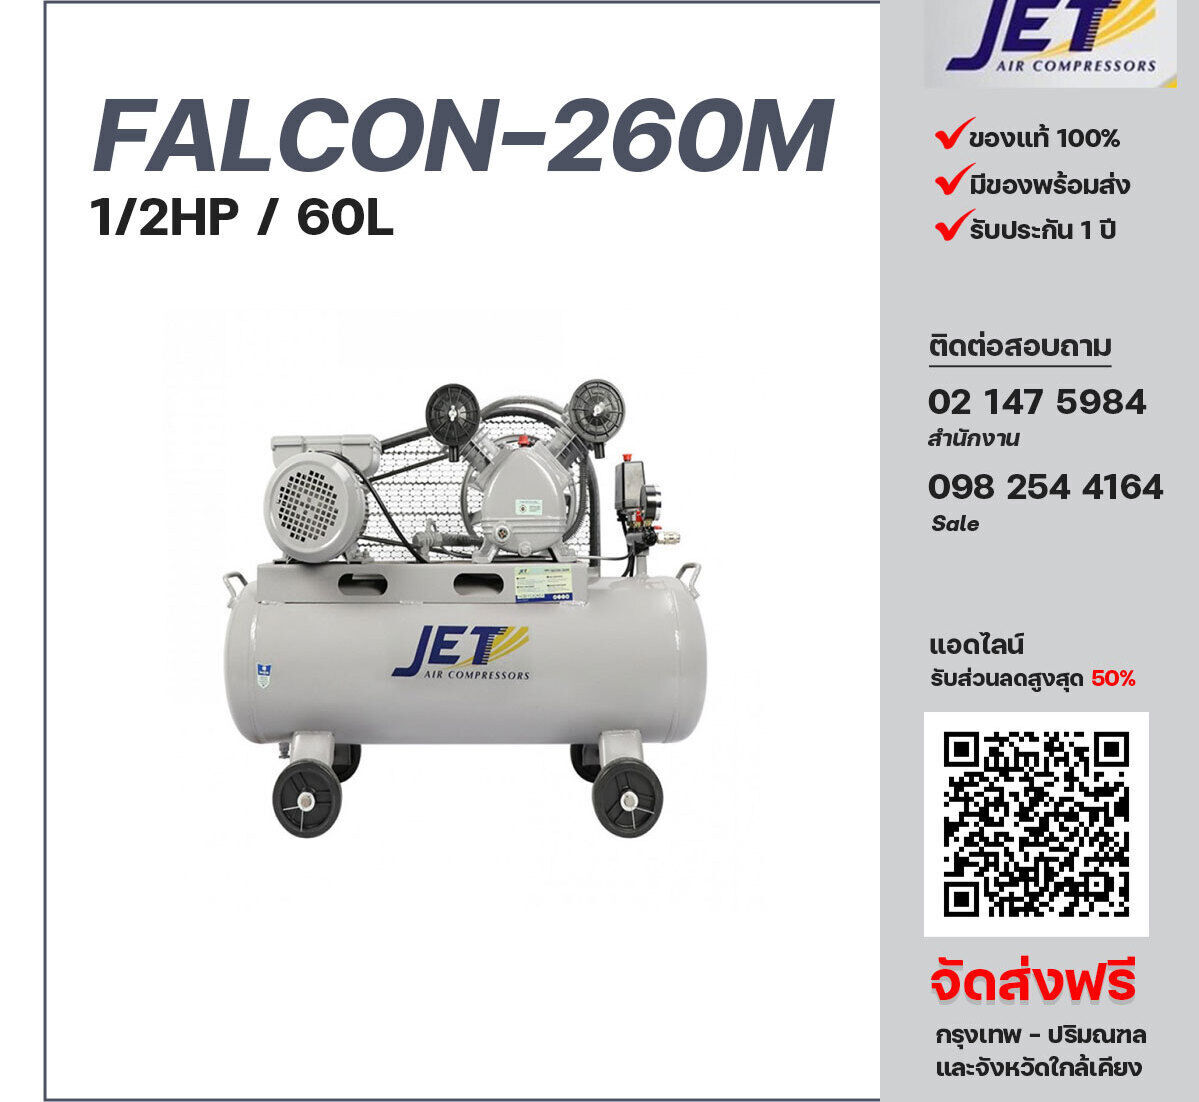 ปั๊มลมสายพาน JET ขนาด 1/2 แรงม้า รุ่น FALCON-260M ไฟฟ้า 220V มอเตอร์ 1.5 แรงม้า ไฟฟ้า 220 โวลต์ ถังเก็บลมขนาด 60 ลิตร รับประกัน 1 ปี ตามเงื่อนไขบริษัทผู้ผลิต